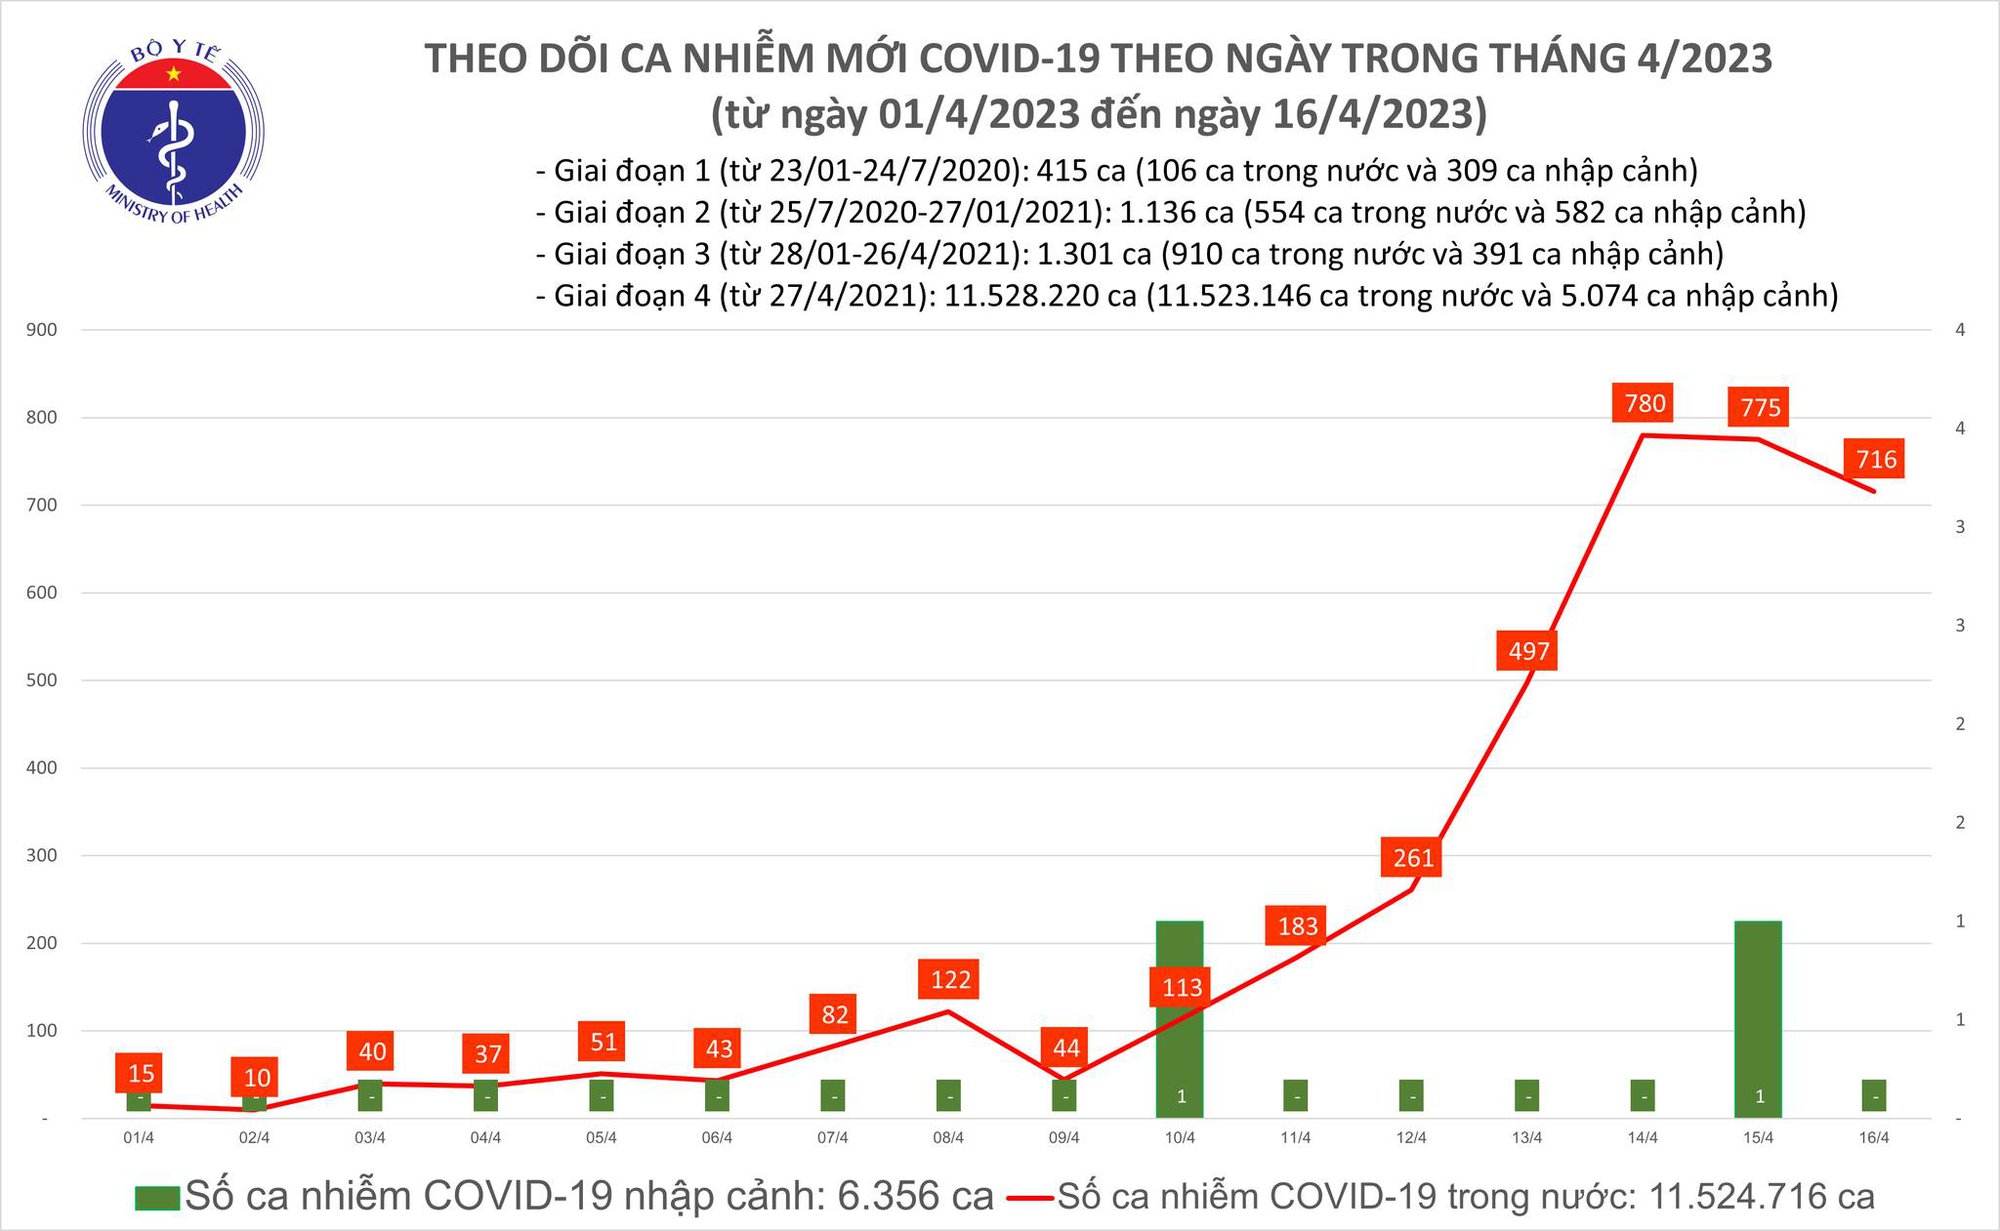 Dịch COVID-19 hôm nay: Bệnh nhân nặng tăng, thêm 716 ca nhiễm mới - Ảnh 1.